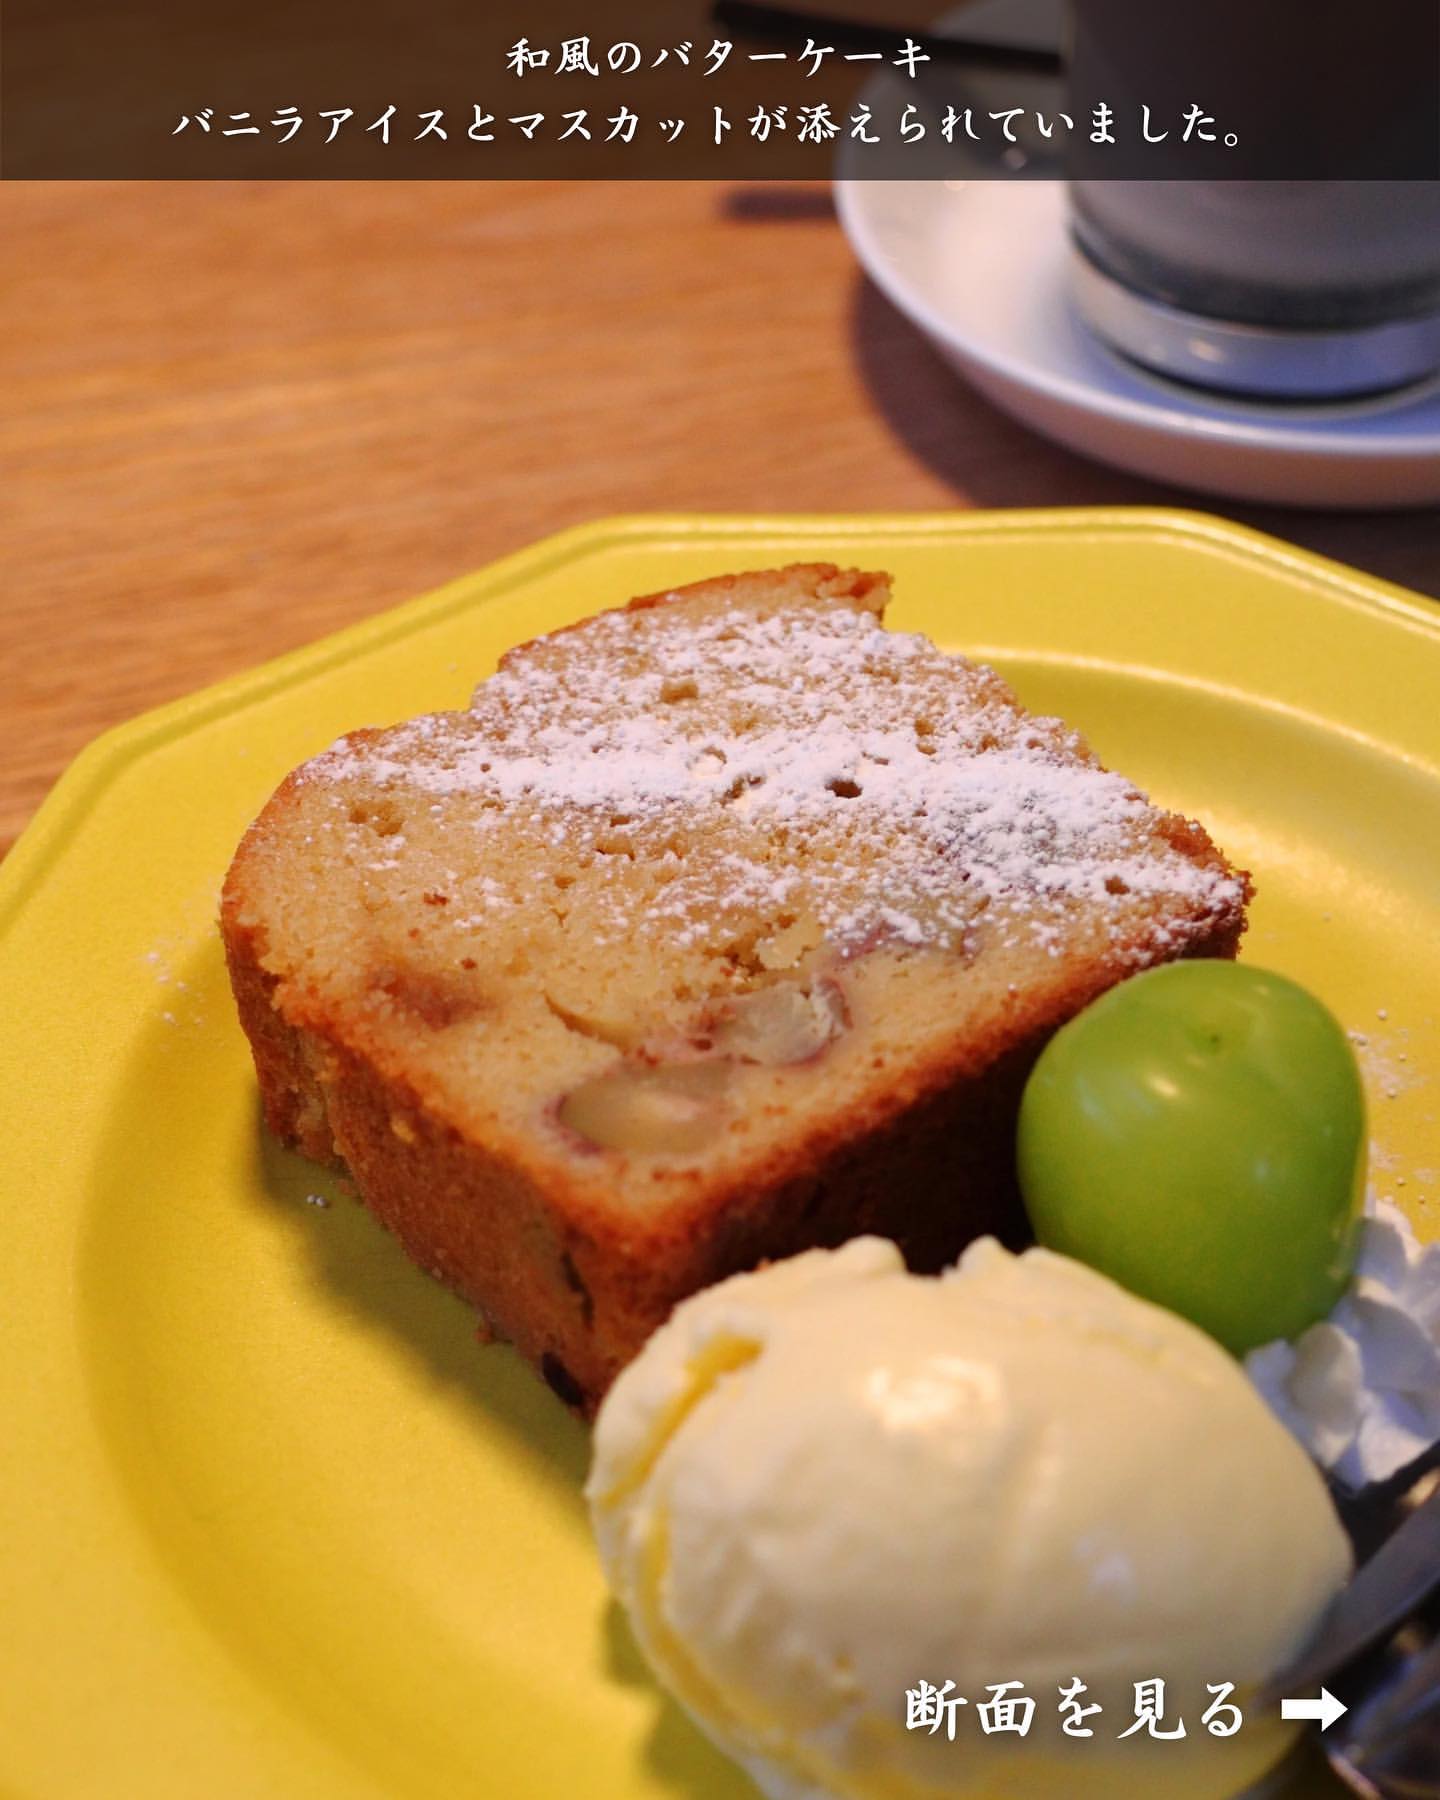 【黒石市・ツキカフェ】和栗のバターケーキ